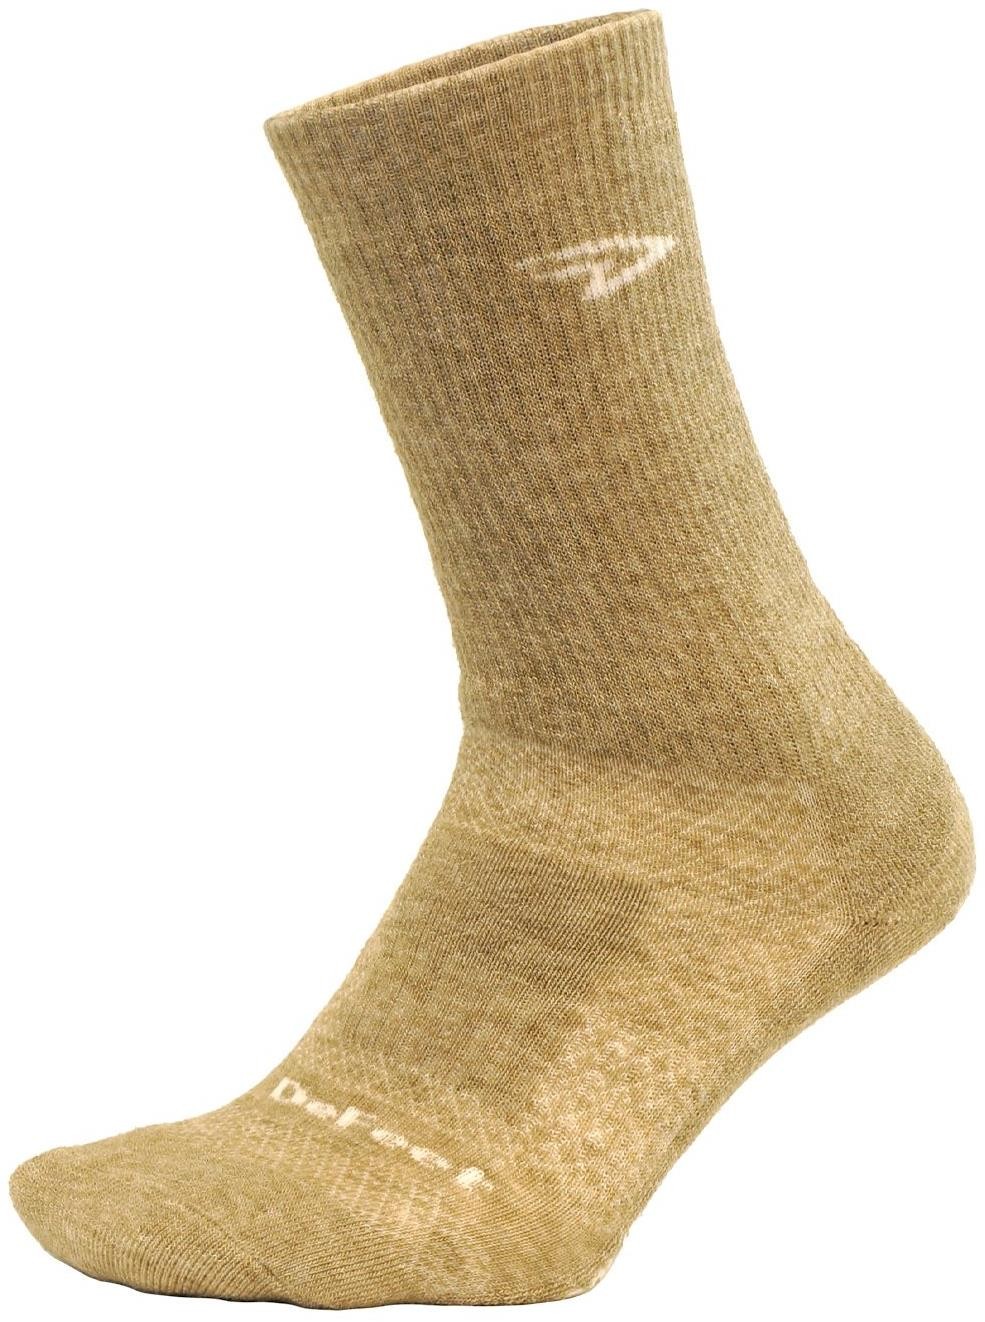 Woolie Boolie Comp 6" Oatmeal Socks image 0